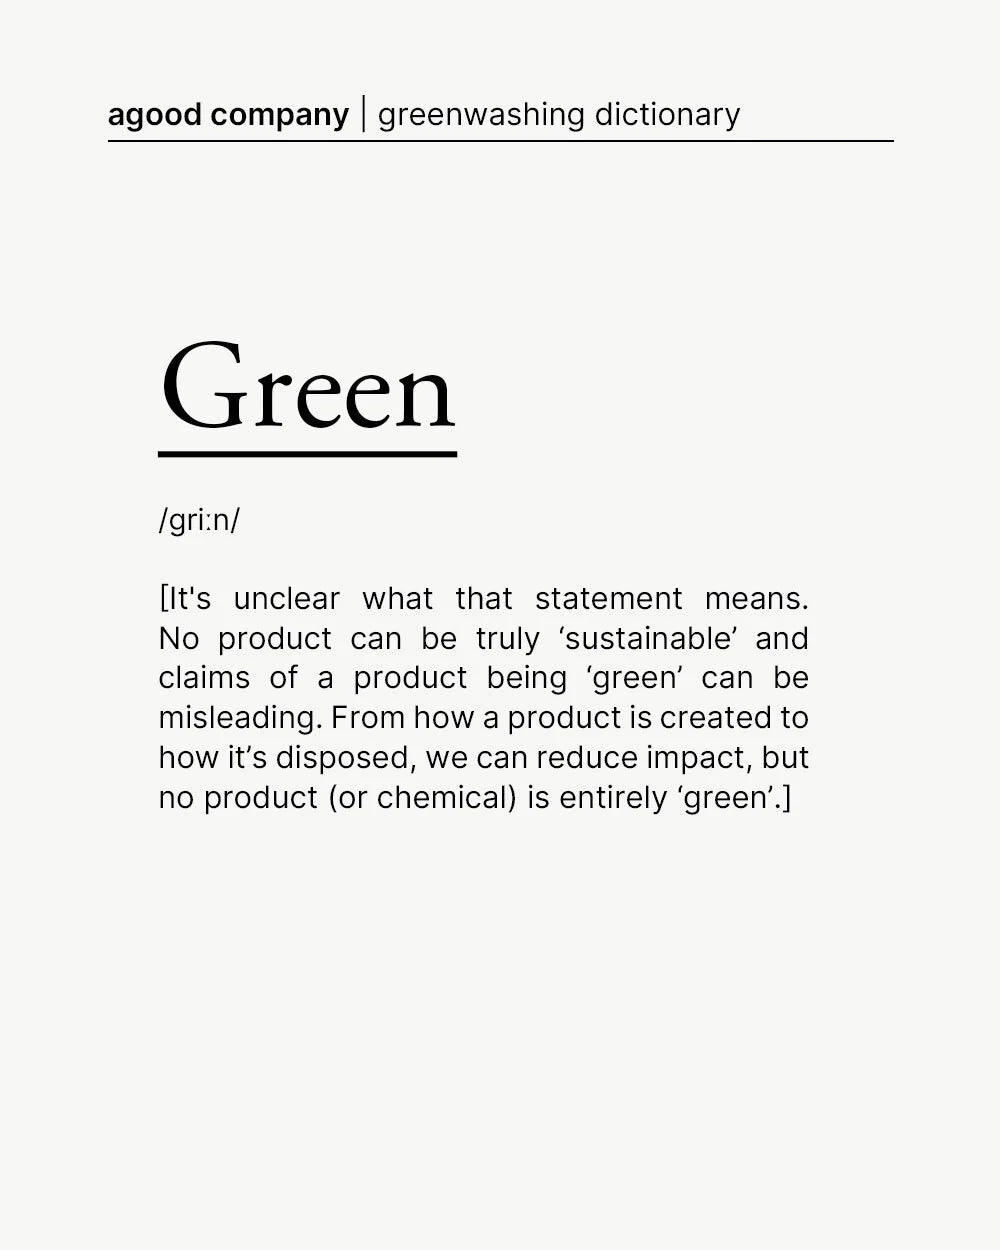 green - greenswasing